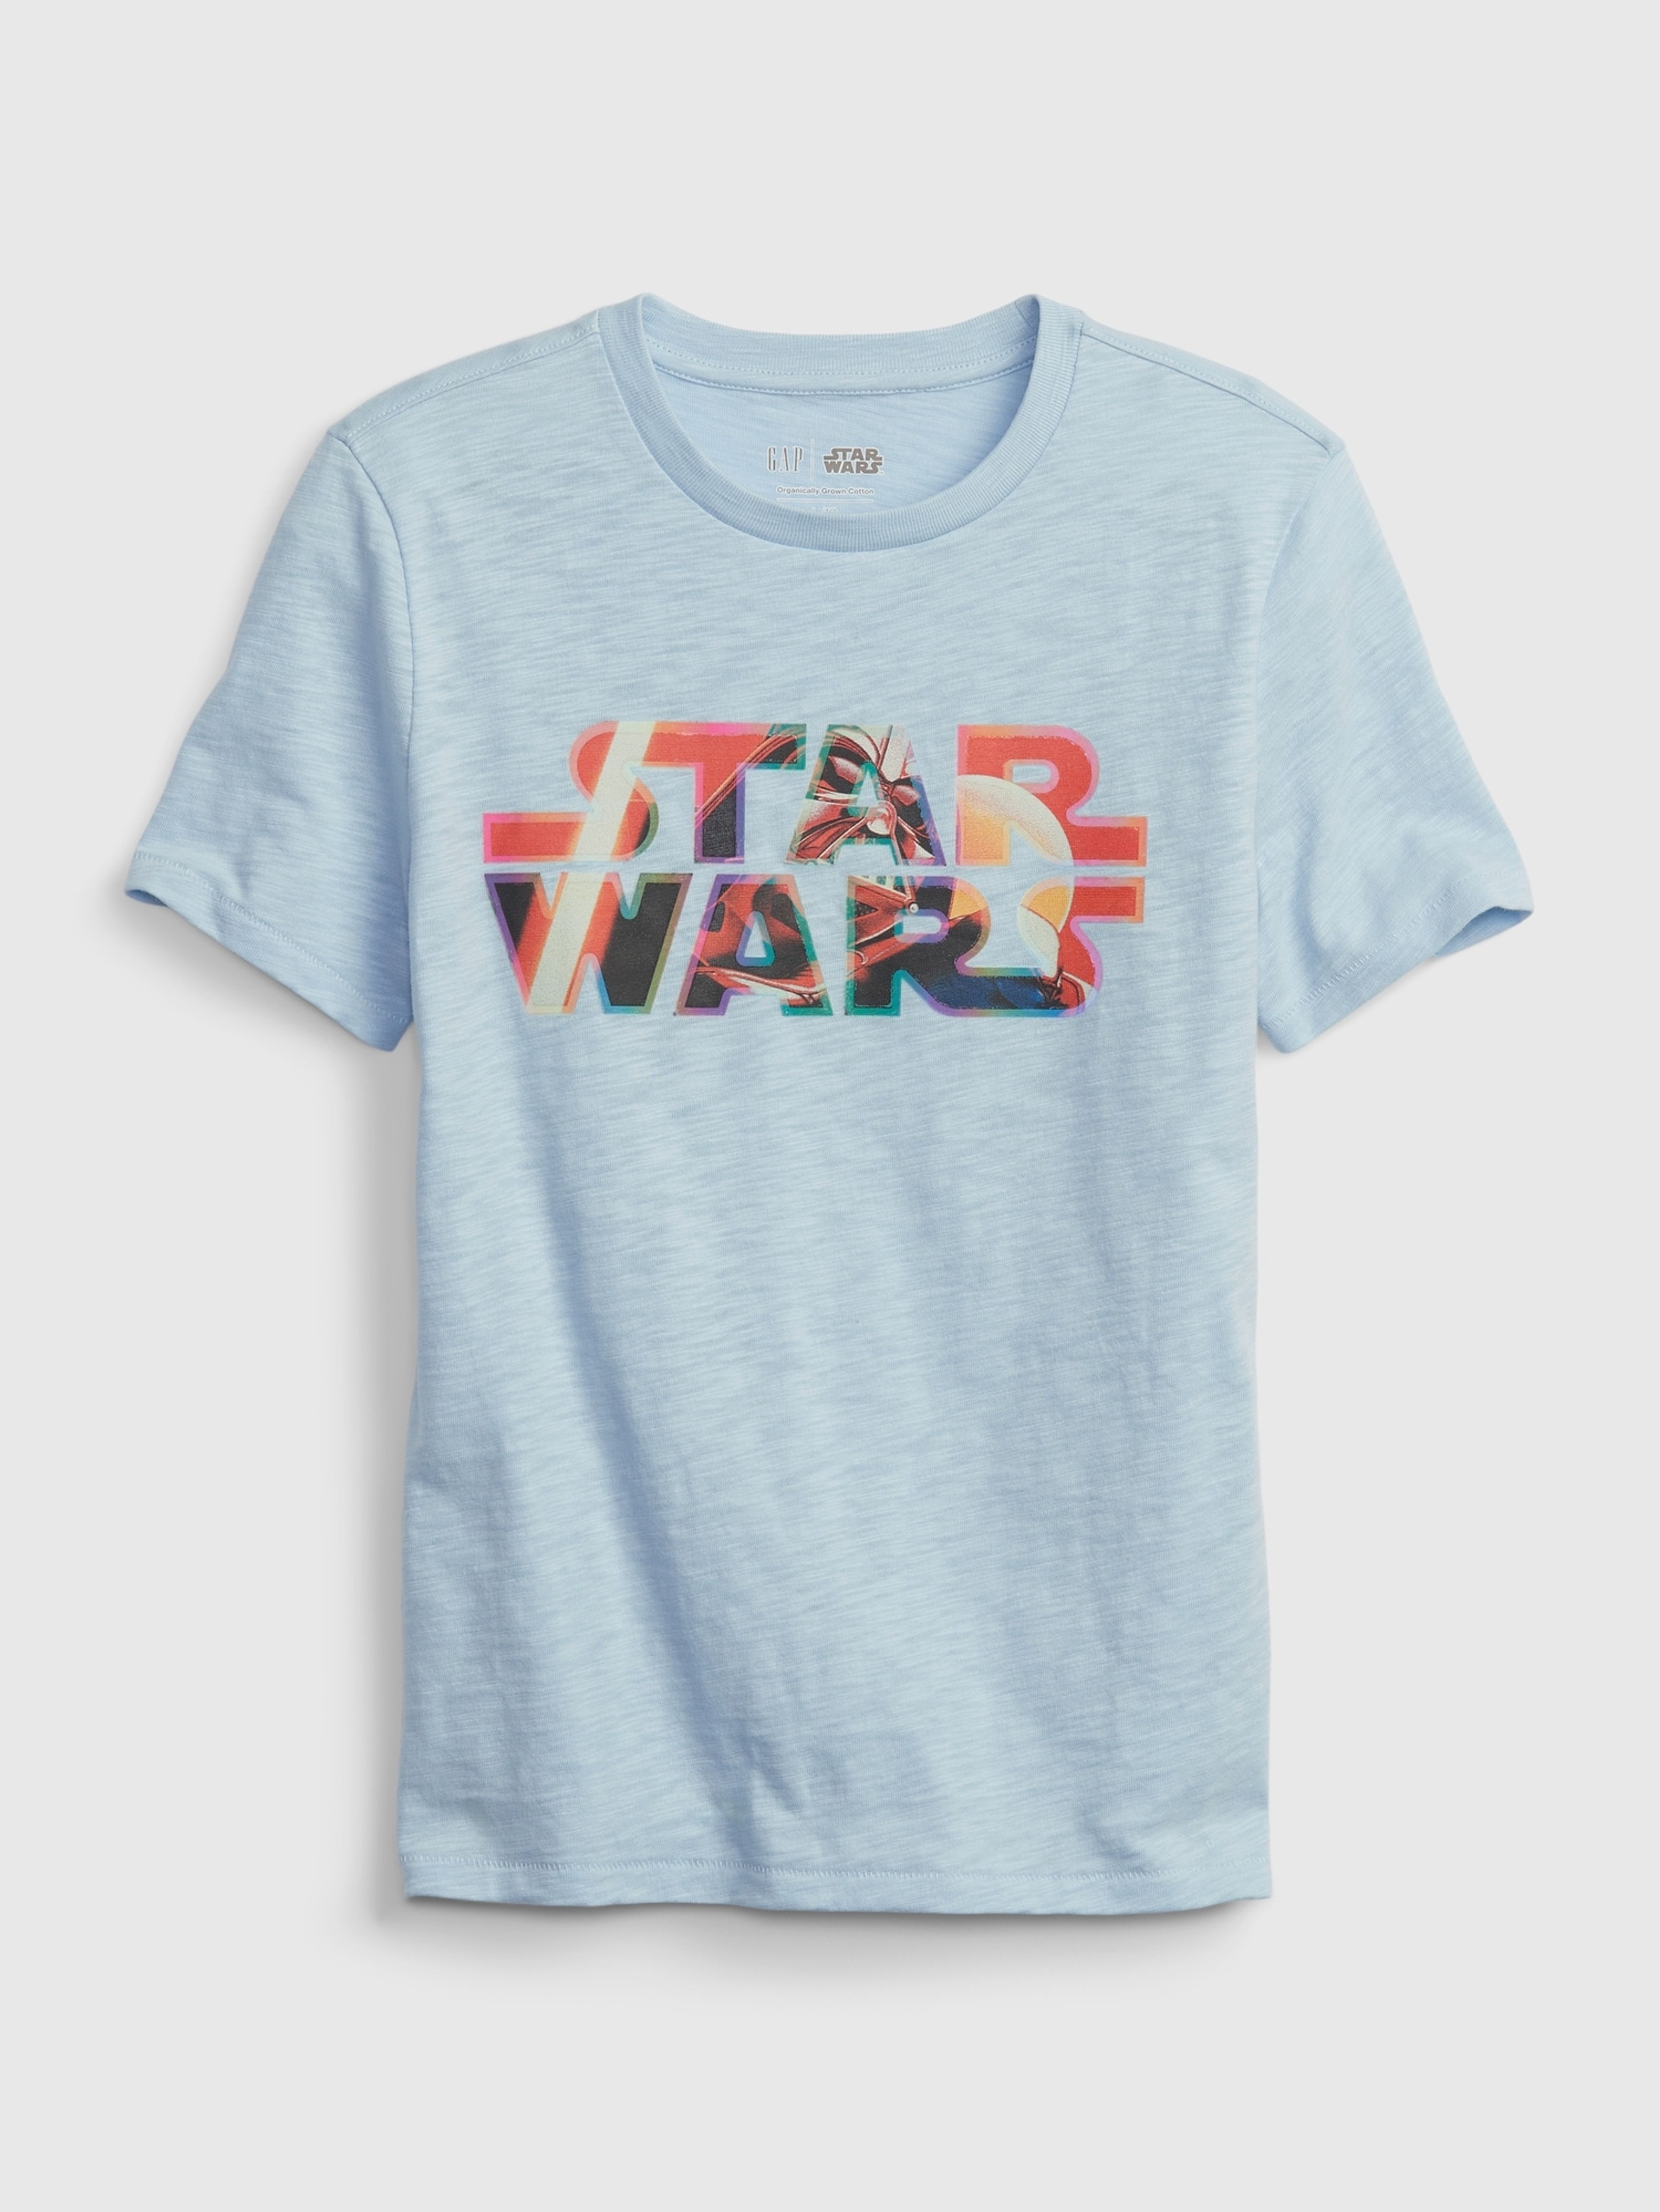 Dětské tričko organic GAP & Star Wars